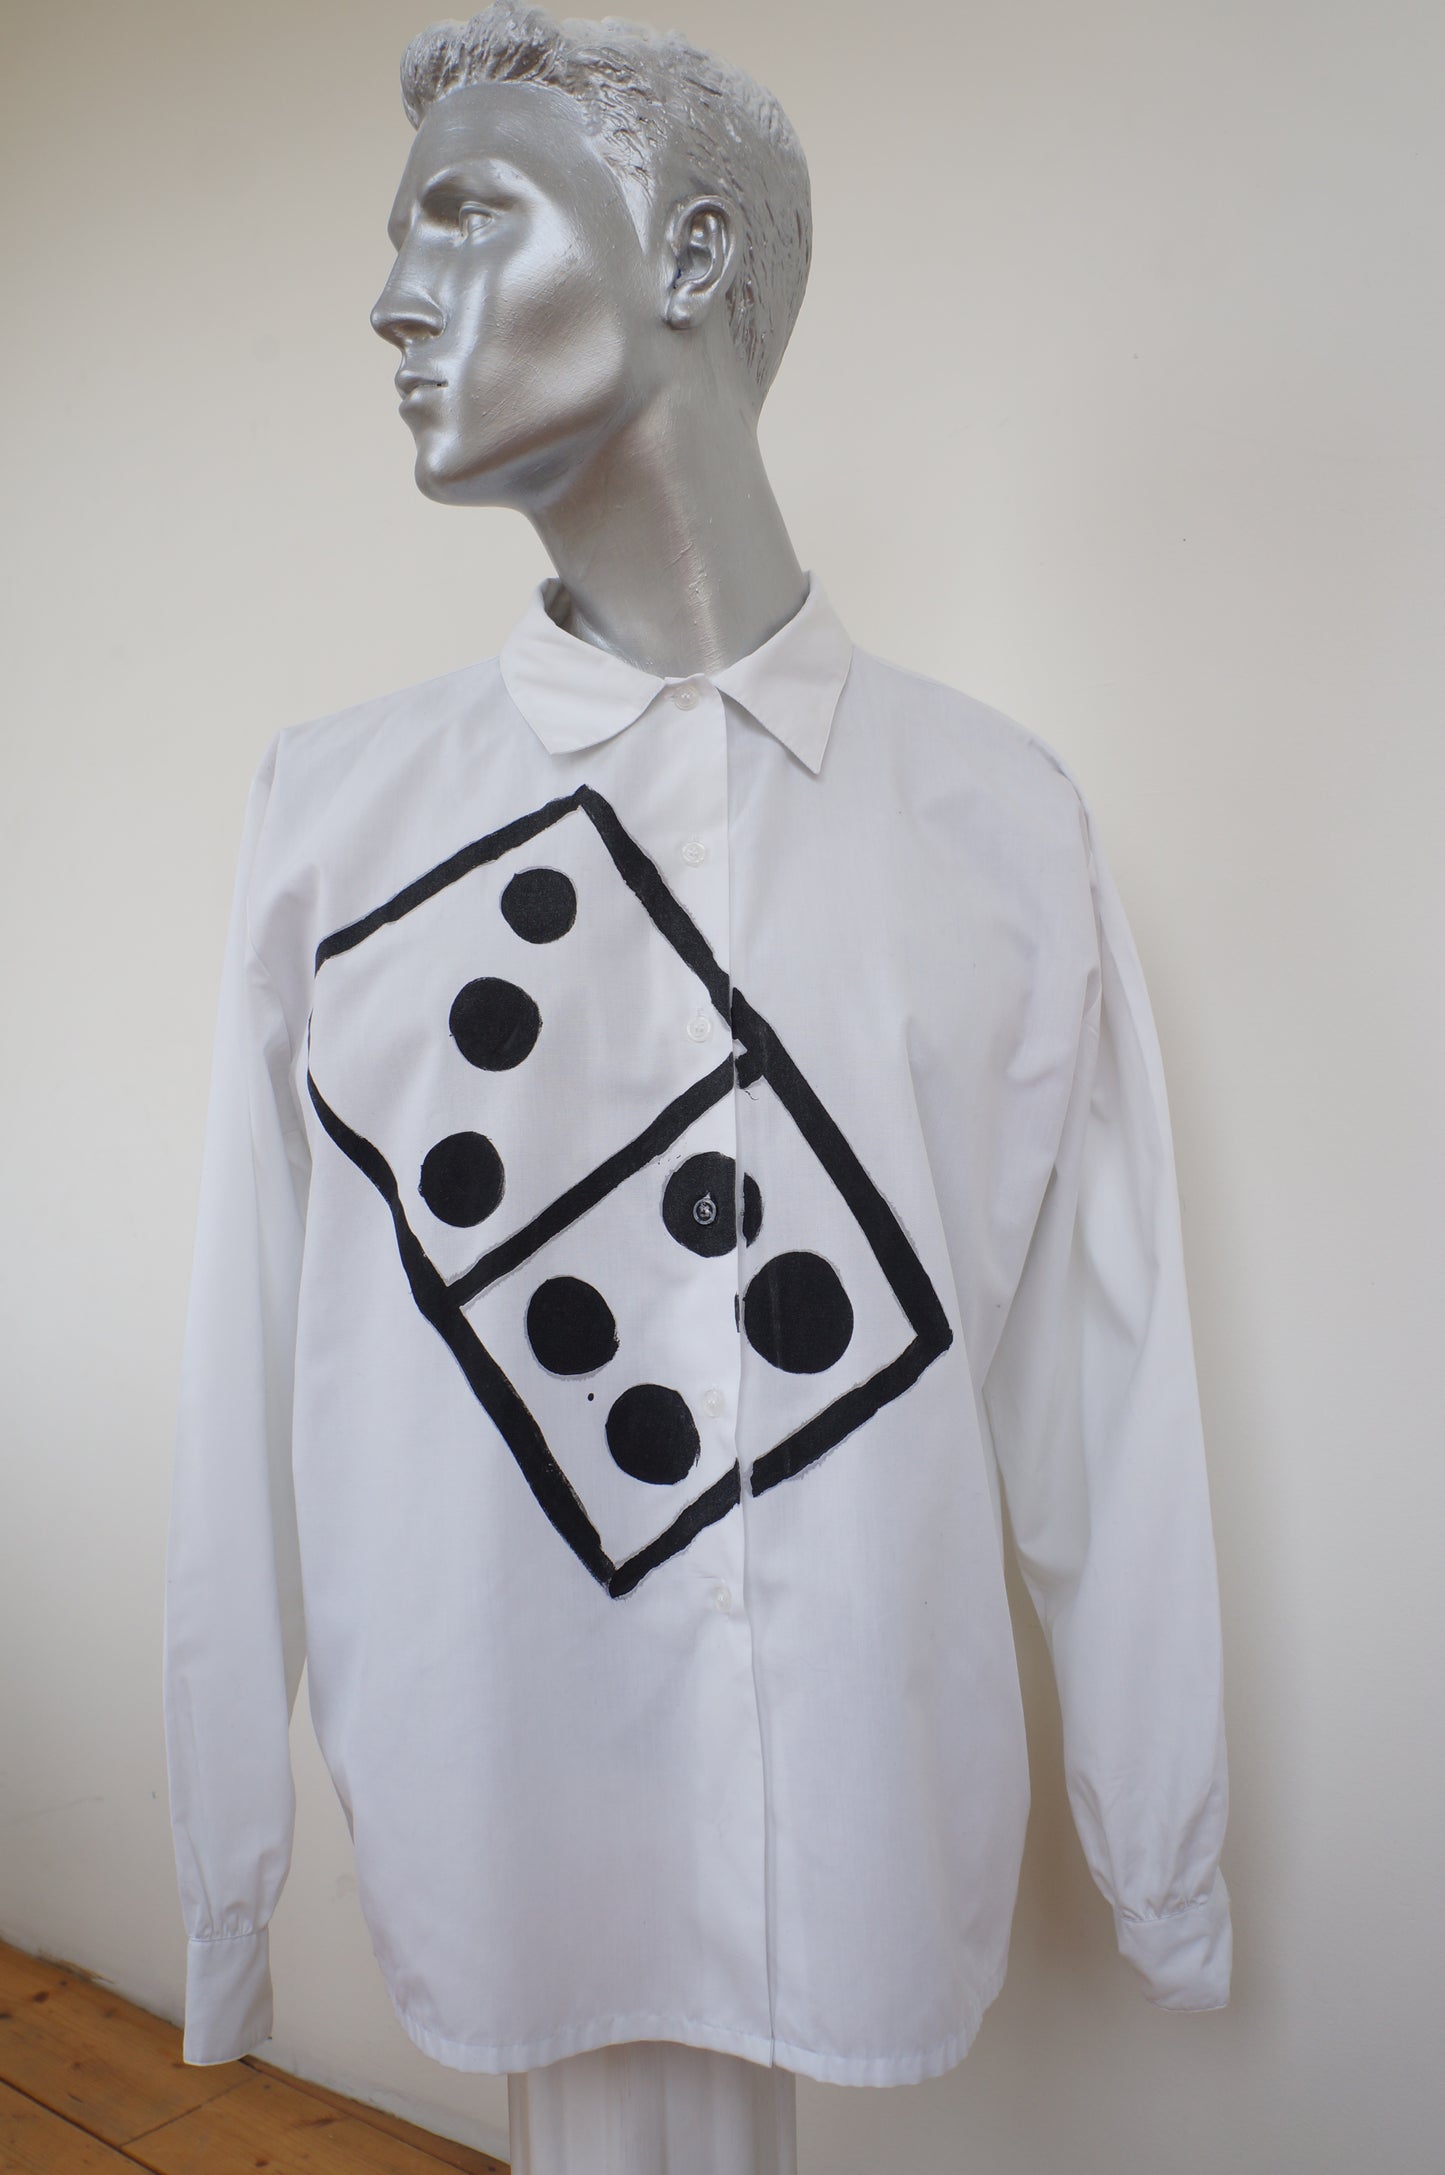 Domino shirt